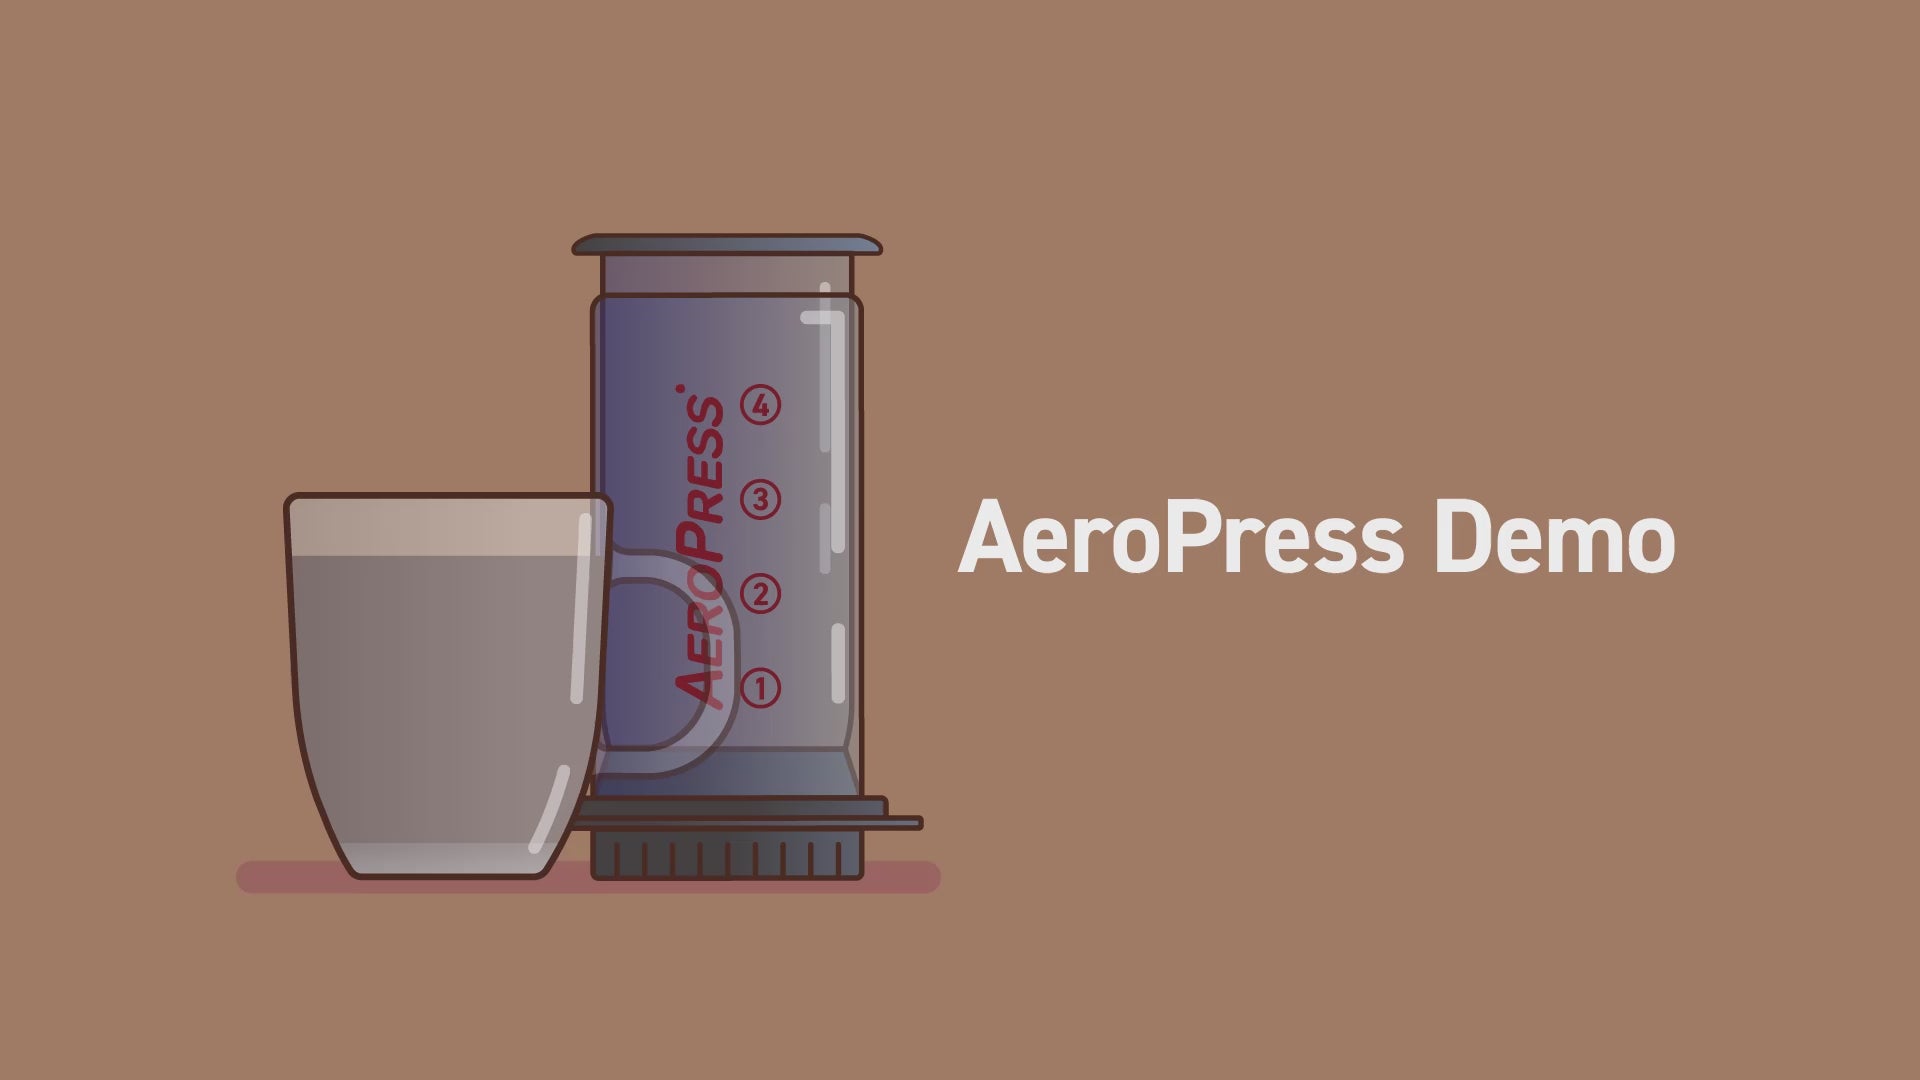 AeroPress Demo